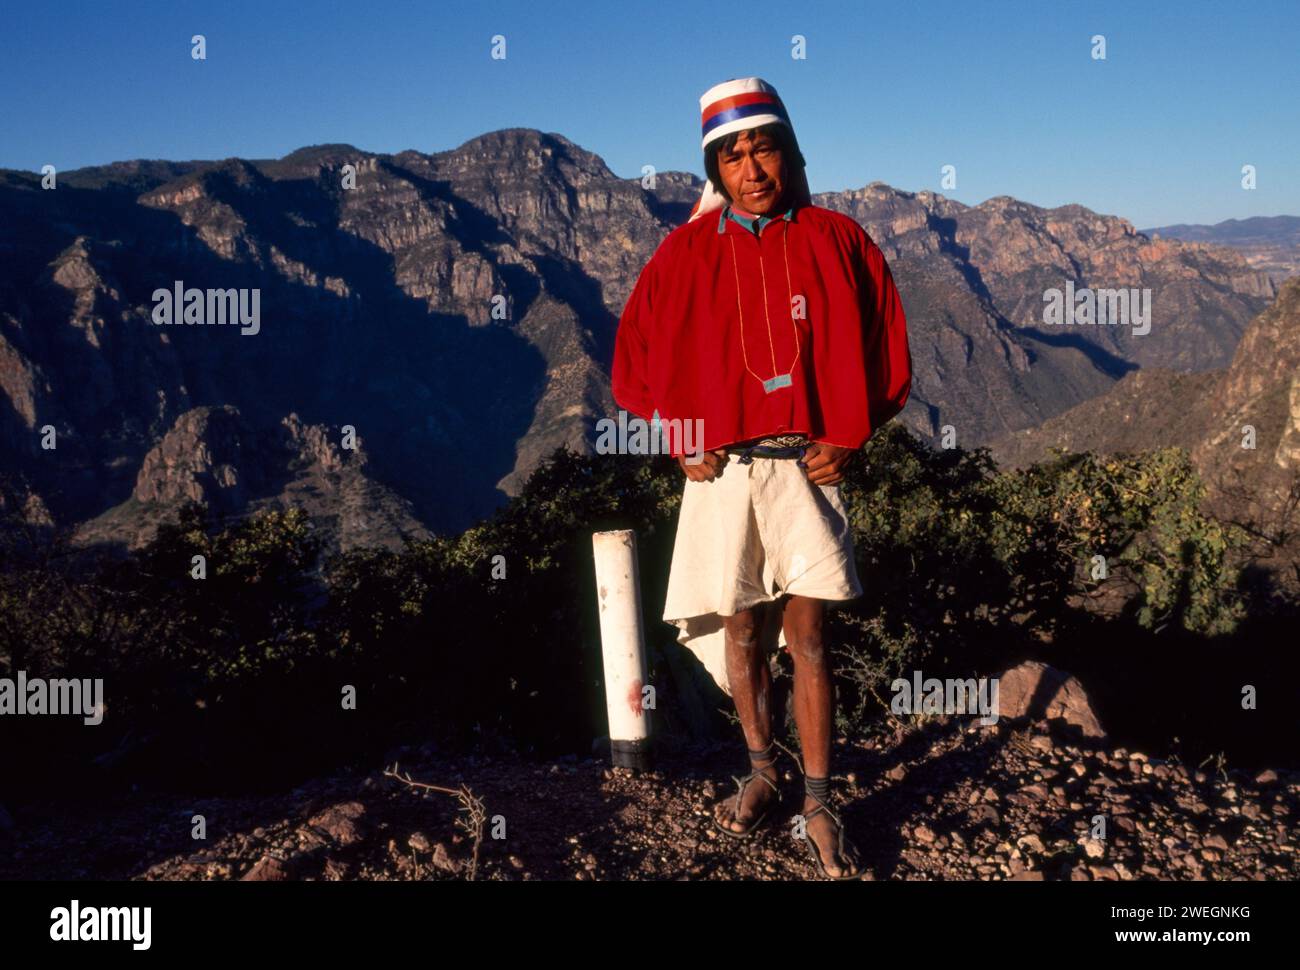 Tarahumara man, on the road to Batopilas, Copper Canyon region, Mexico Stock Photo